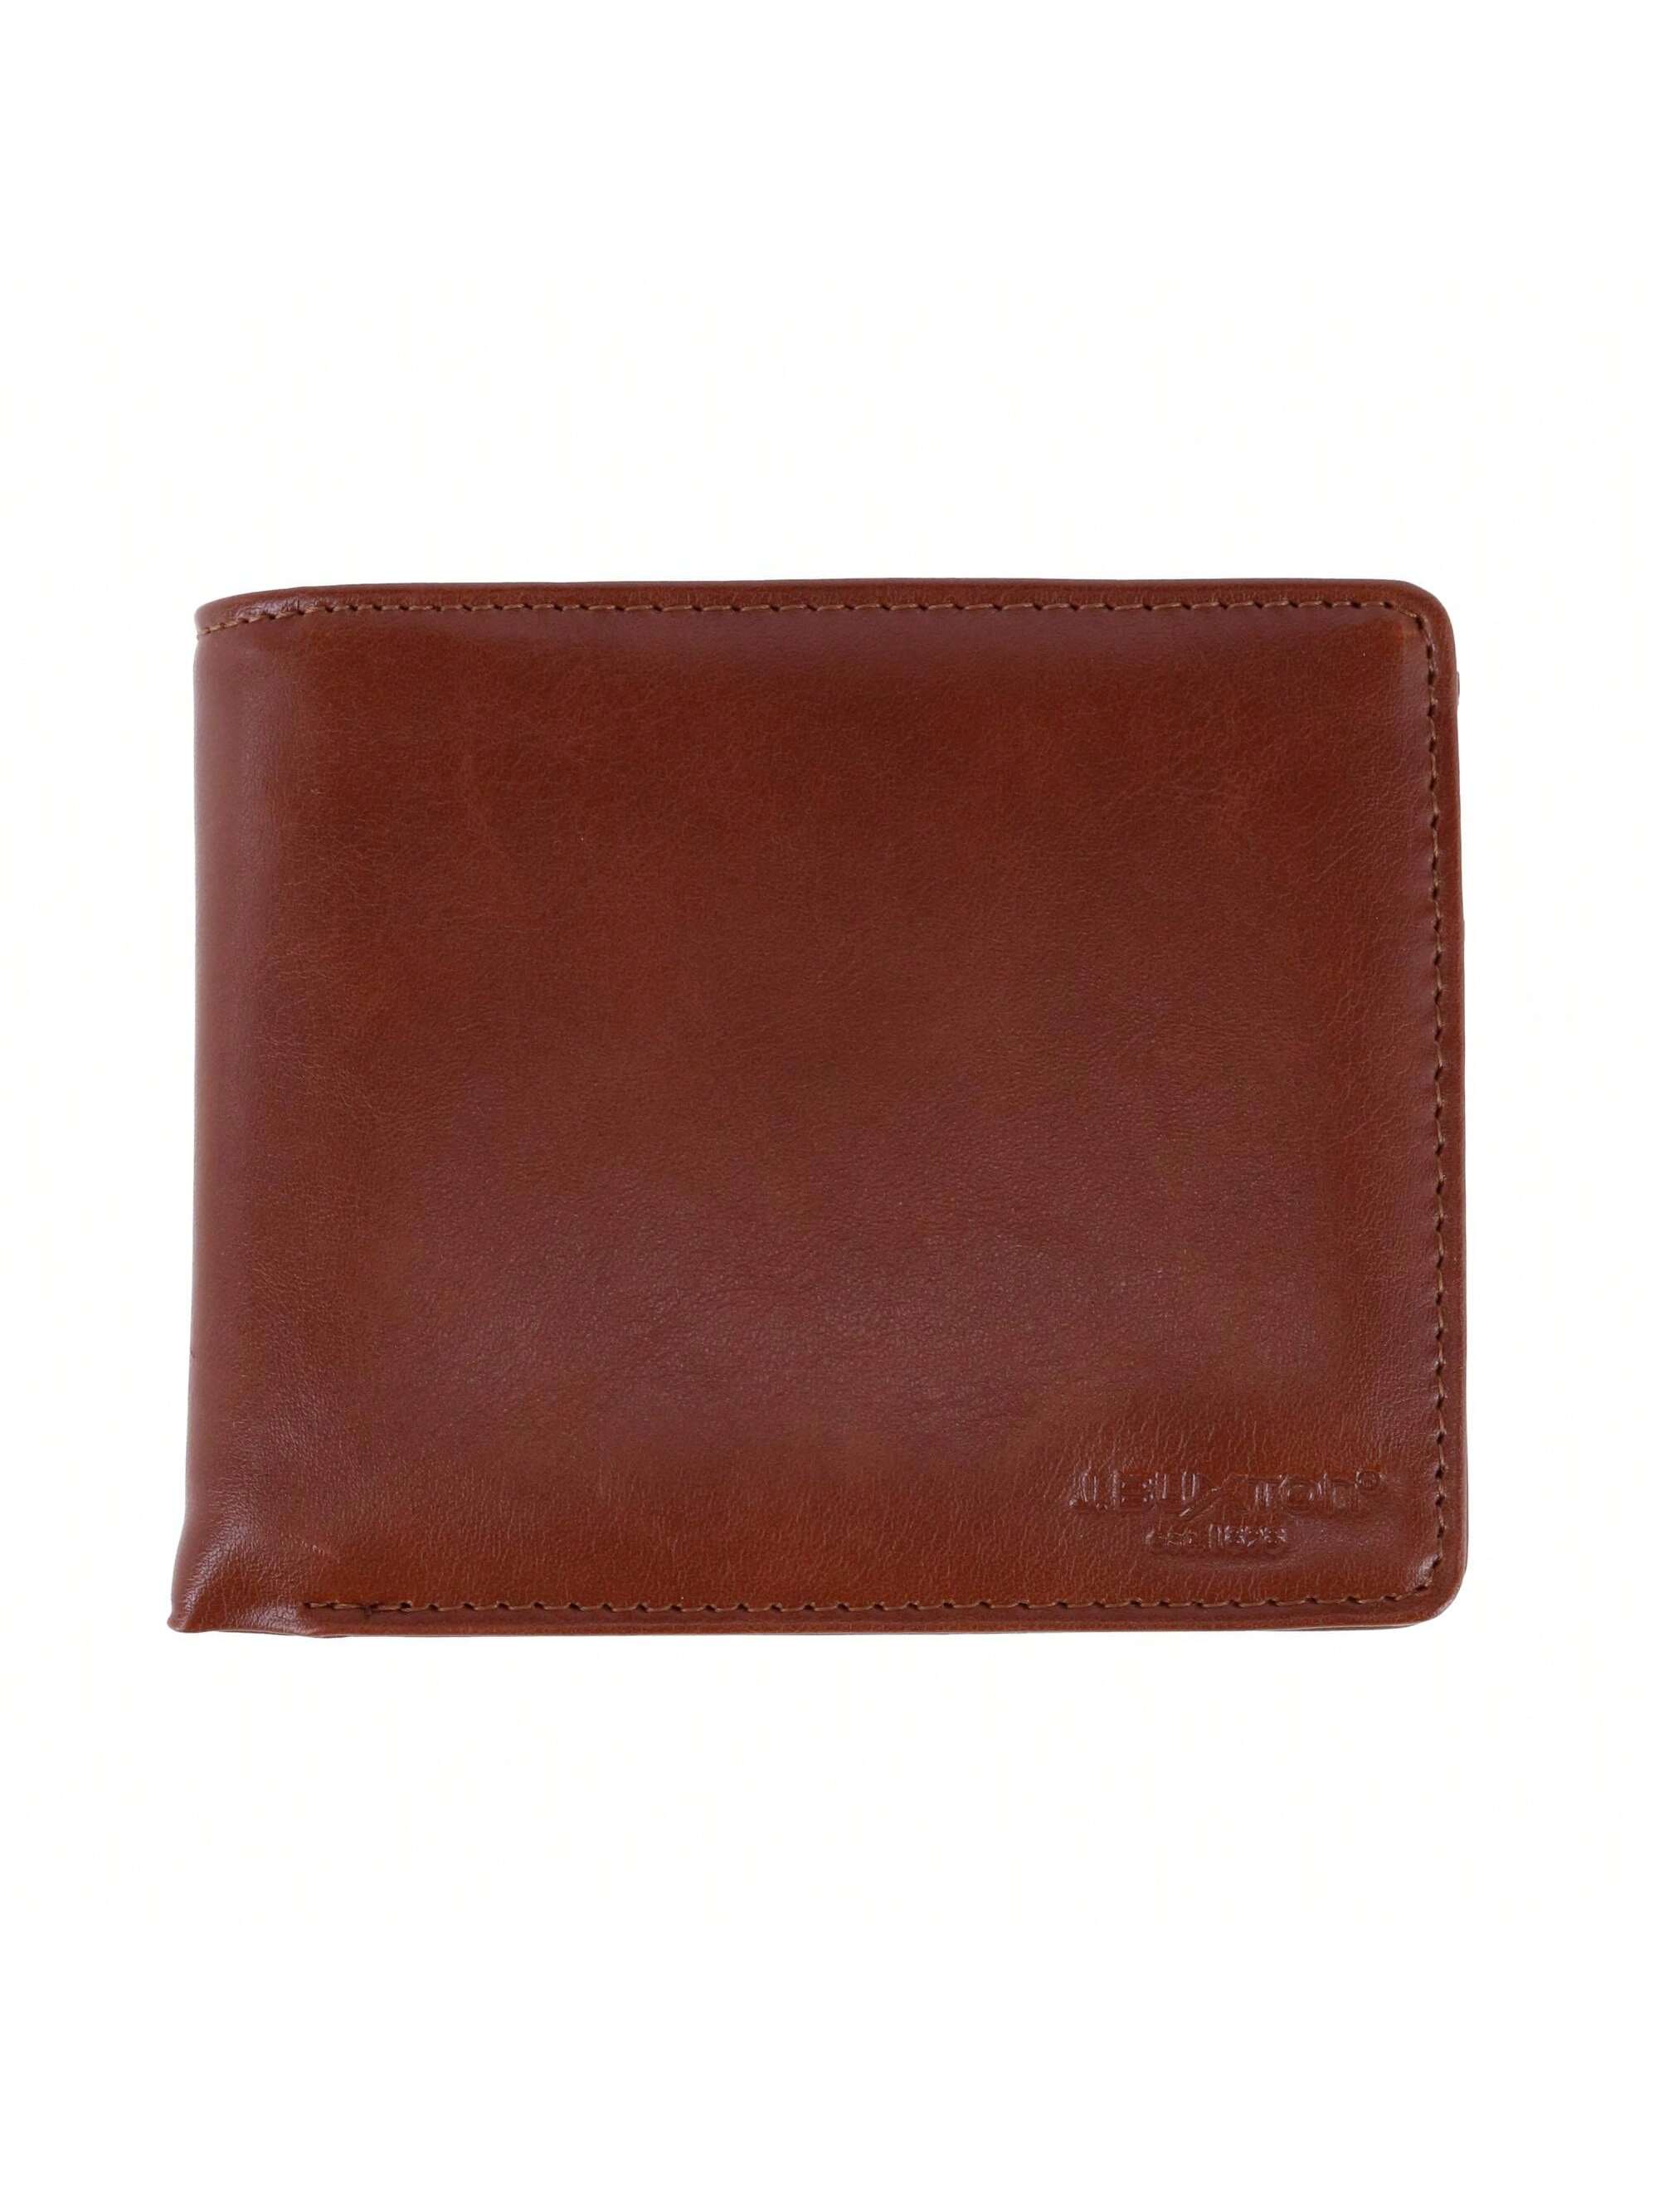 Мужской кошелек Buxton из веганской кожи с RFID-метками и двойным складыванием, коричневый